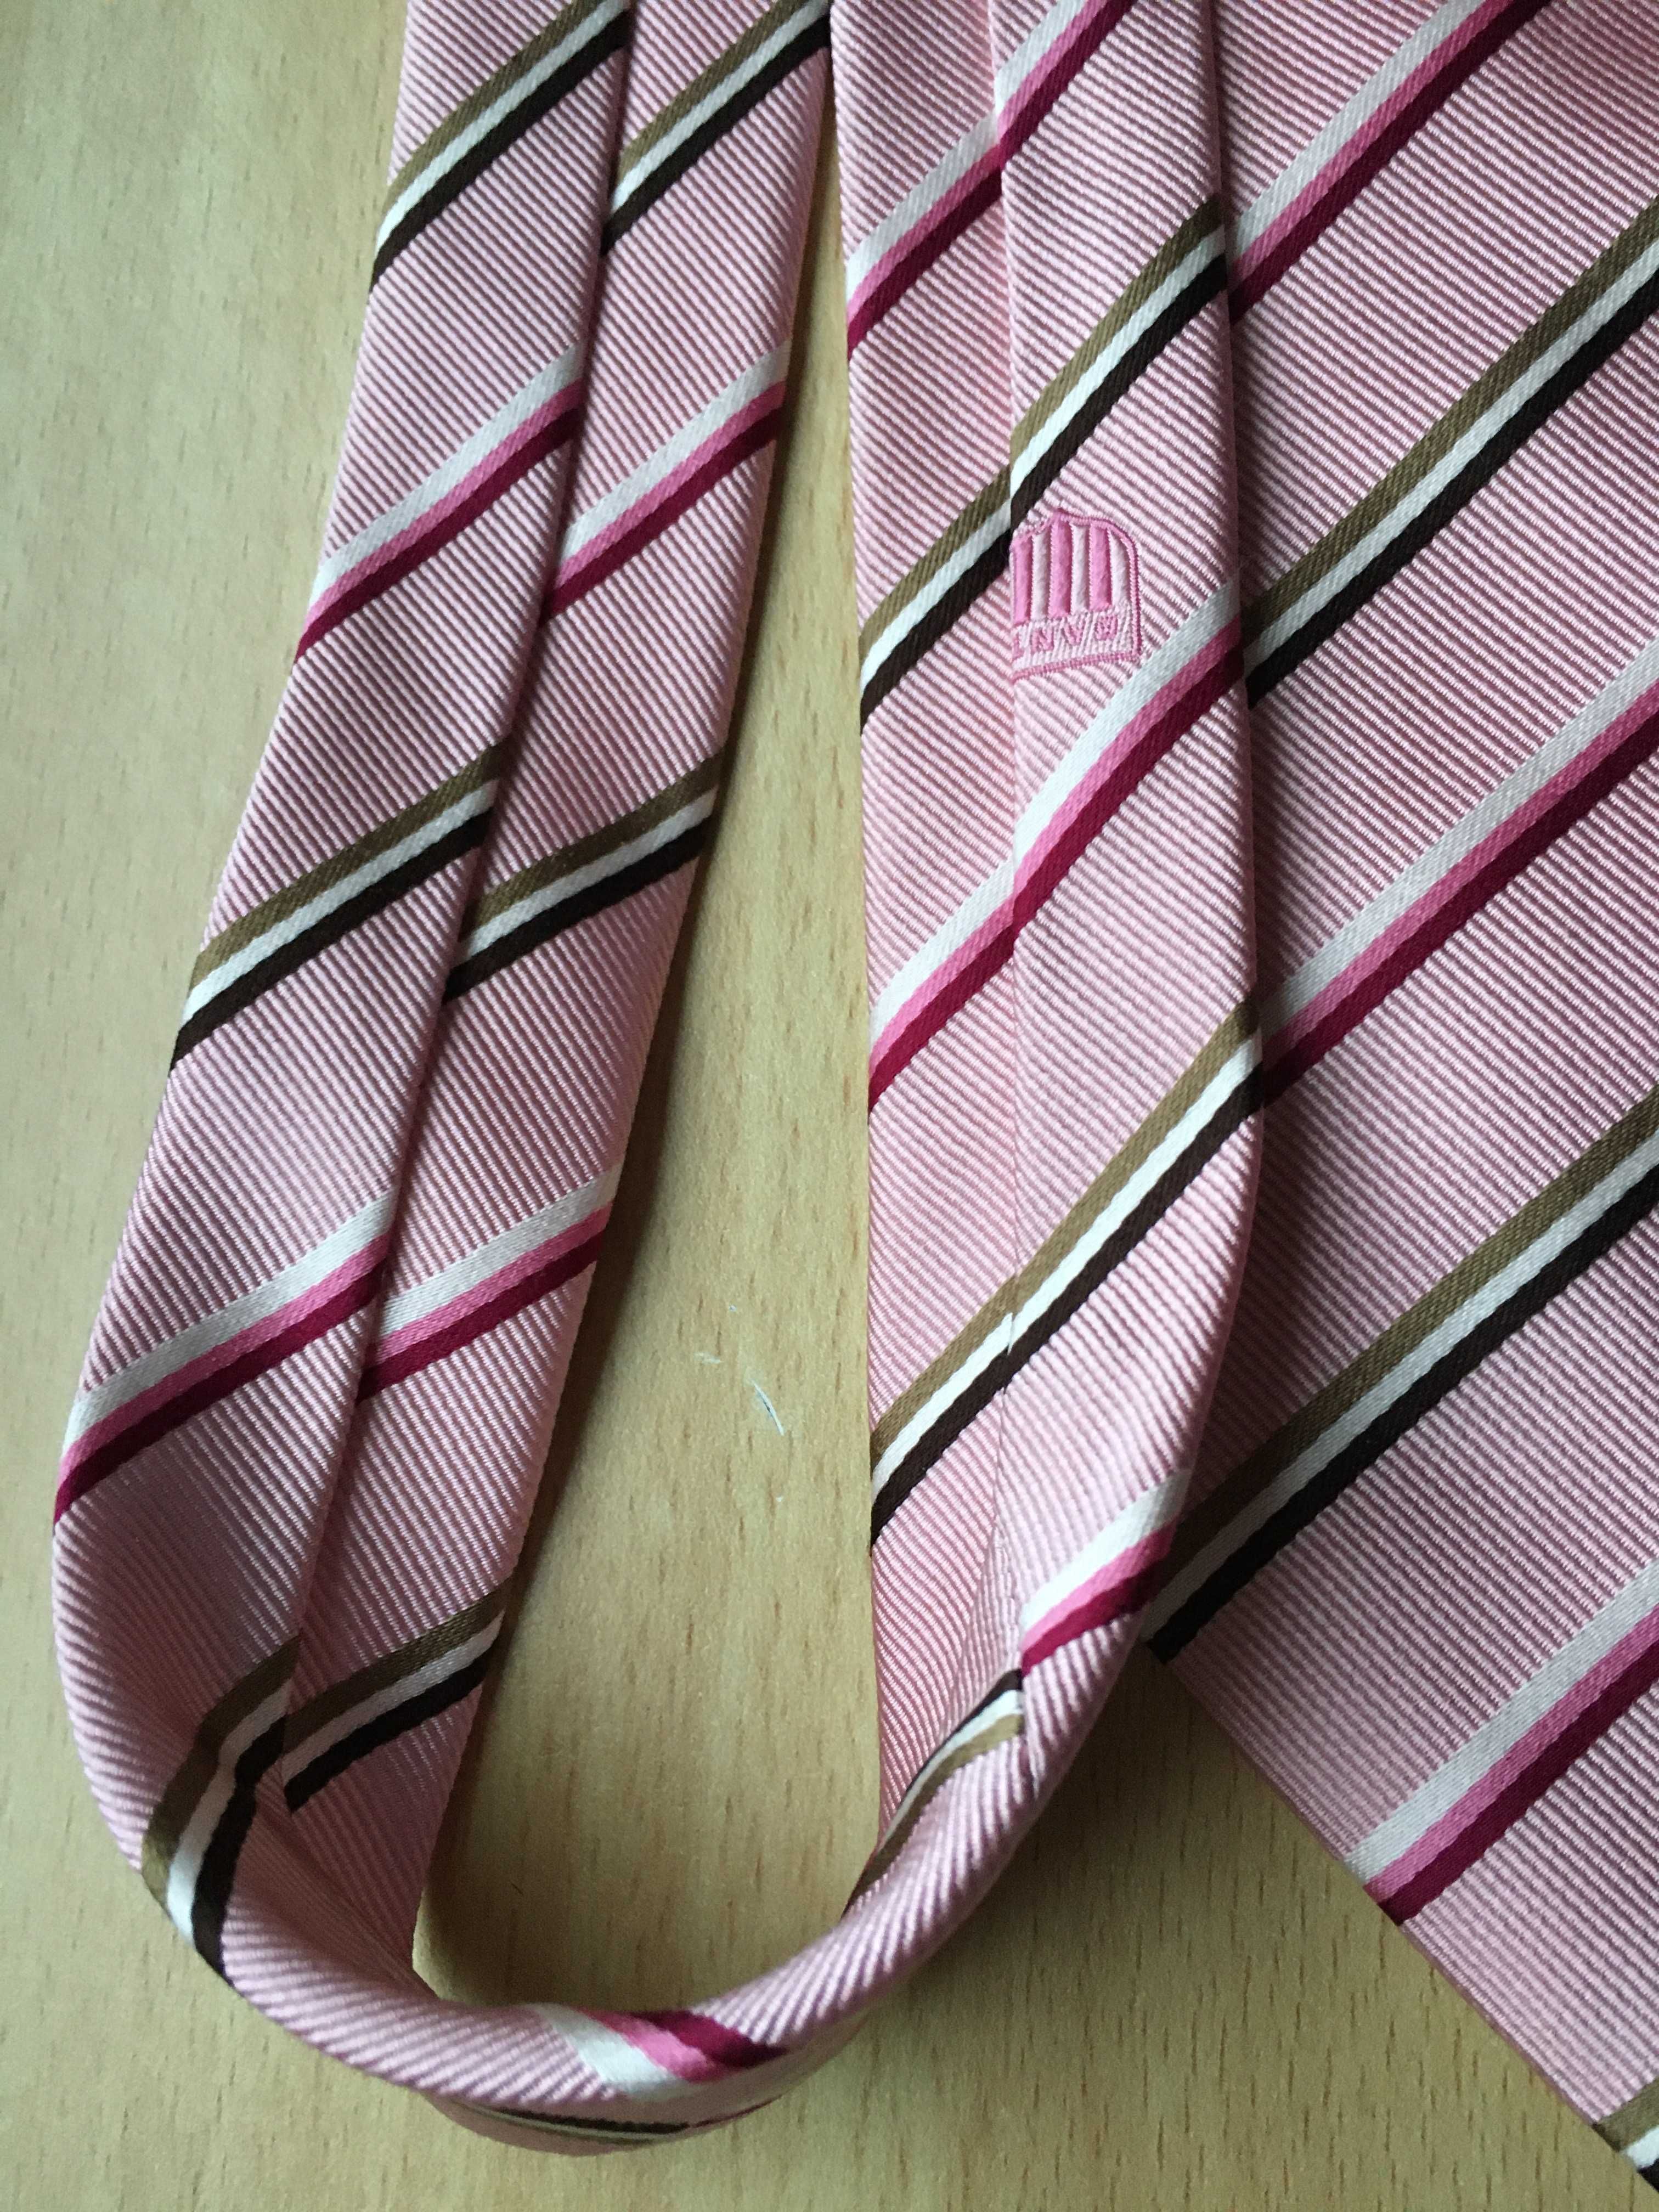 Krawat męski jedwabny w paski marki *Gant* różowy